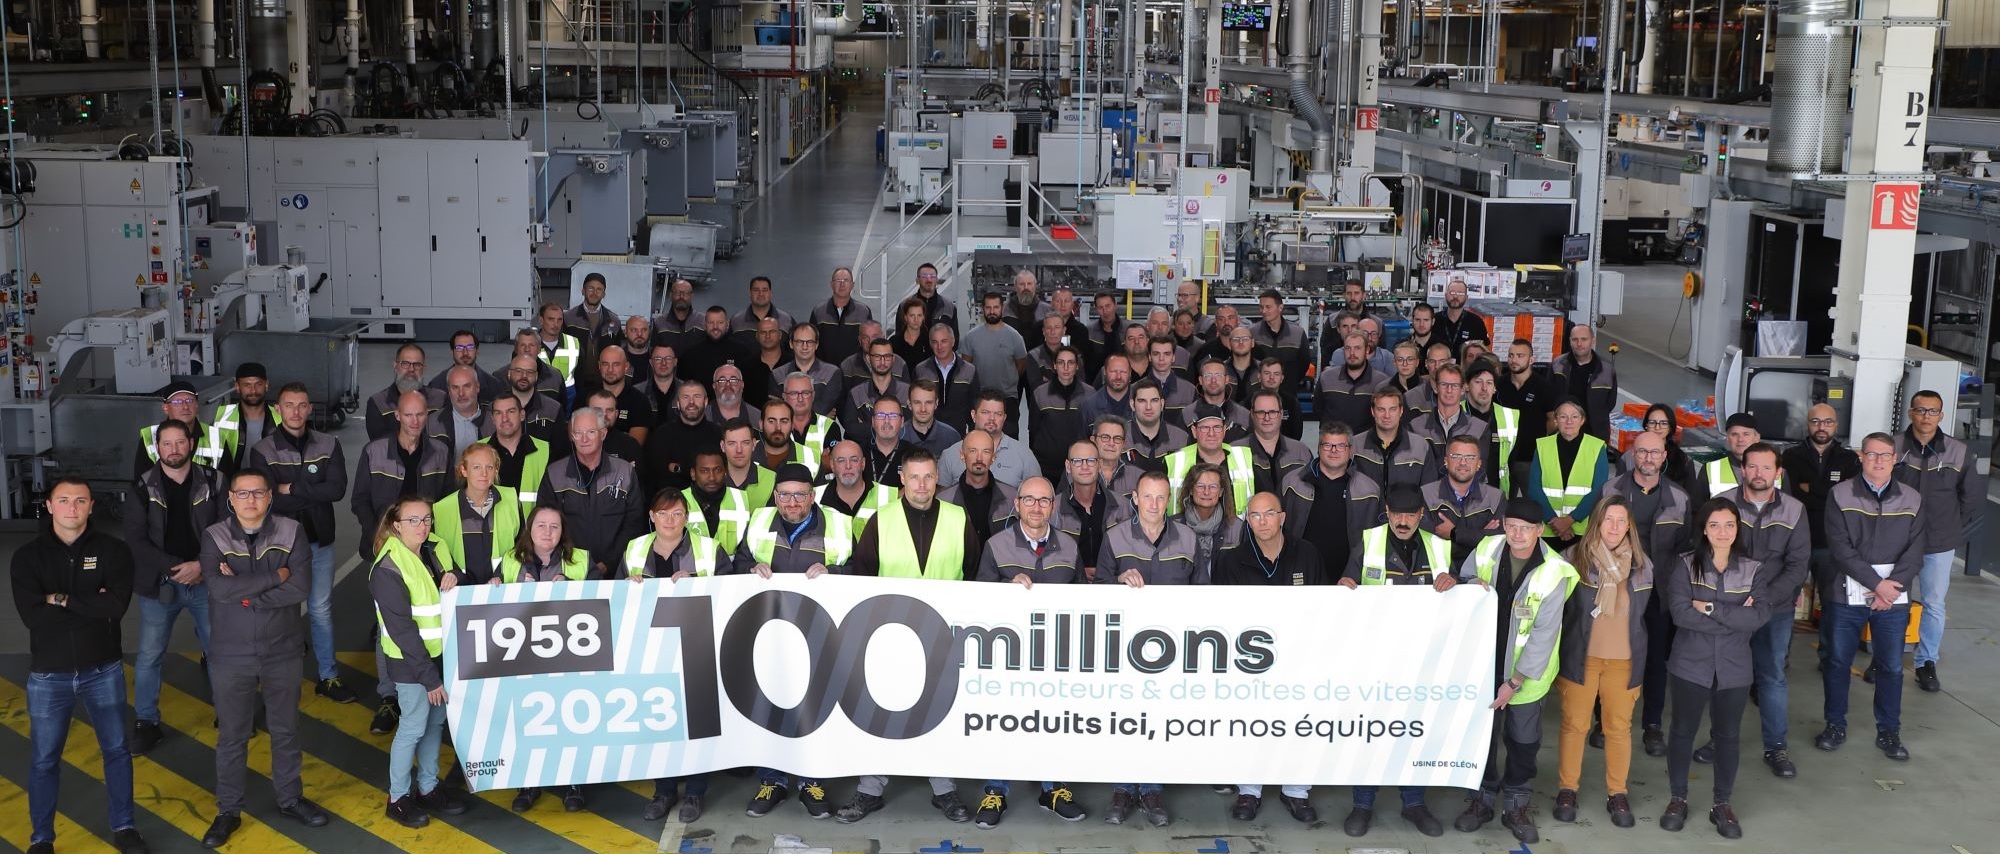 100 millions de moteurs et boîtes de vitesses fabriqués : un héritage d’excellence pour Cléon